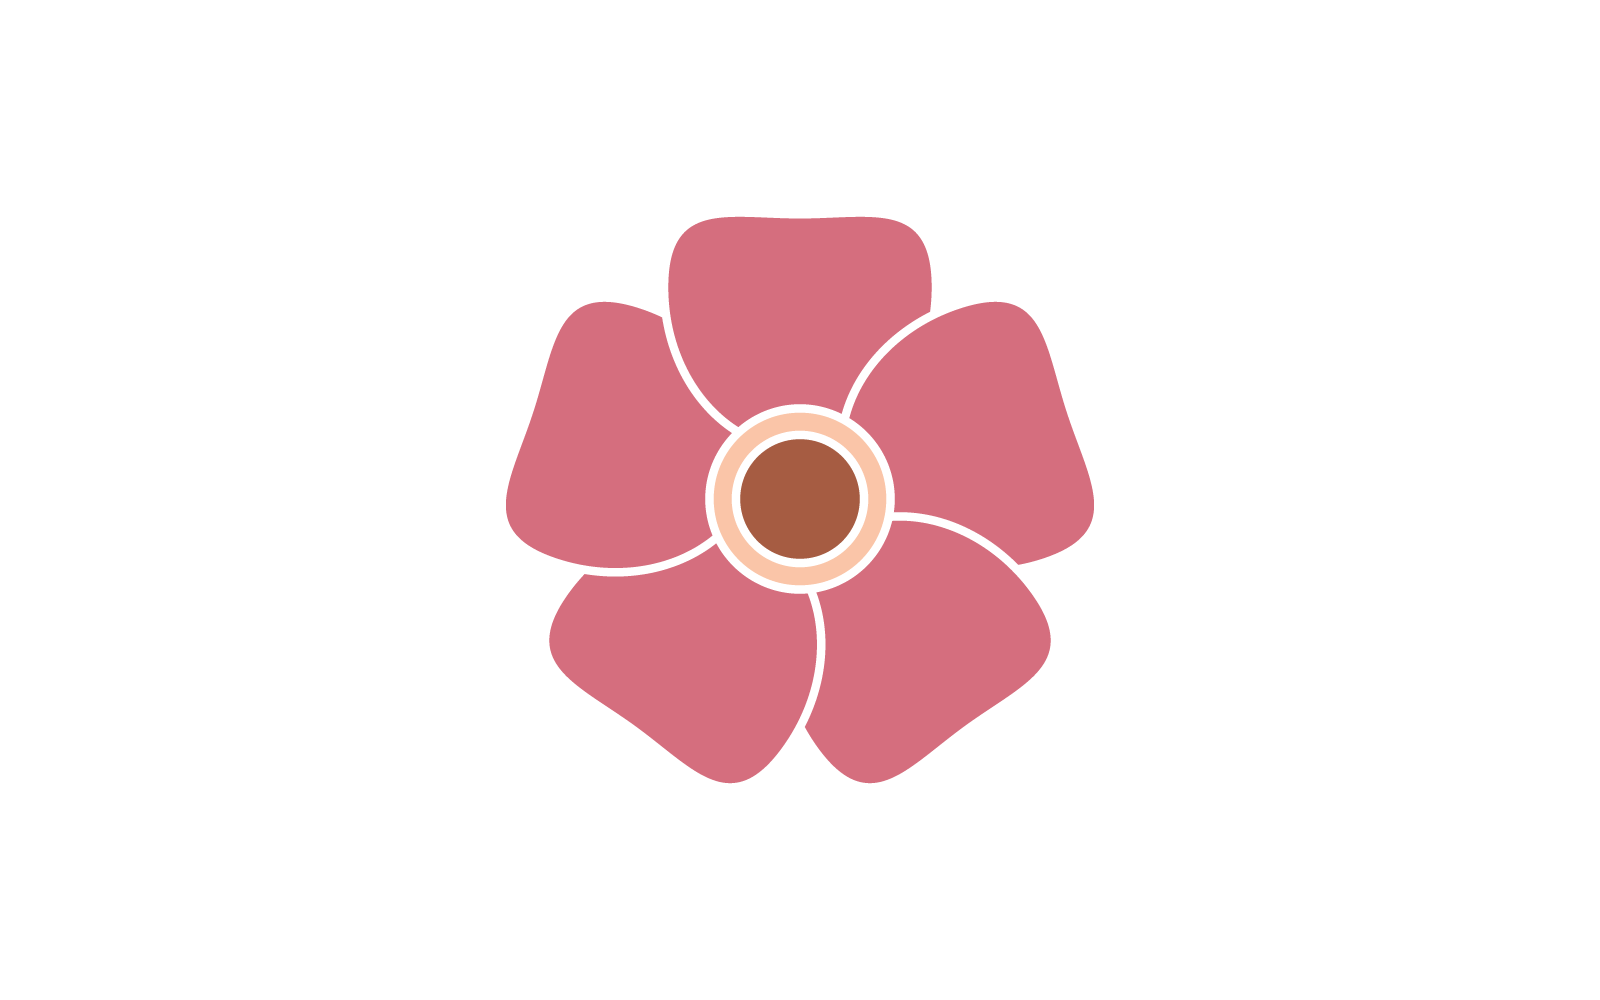 Plumeria flower logo illustration template vector Logo Template